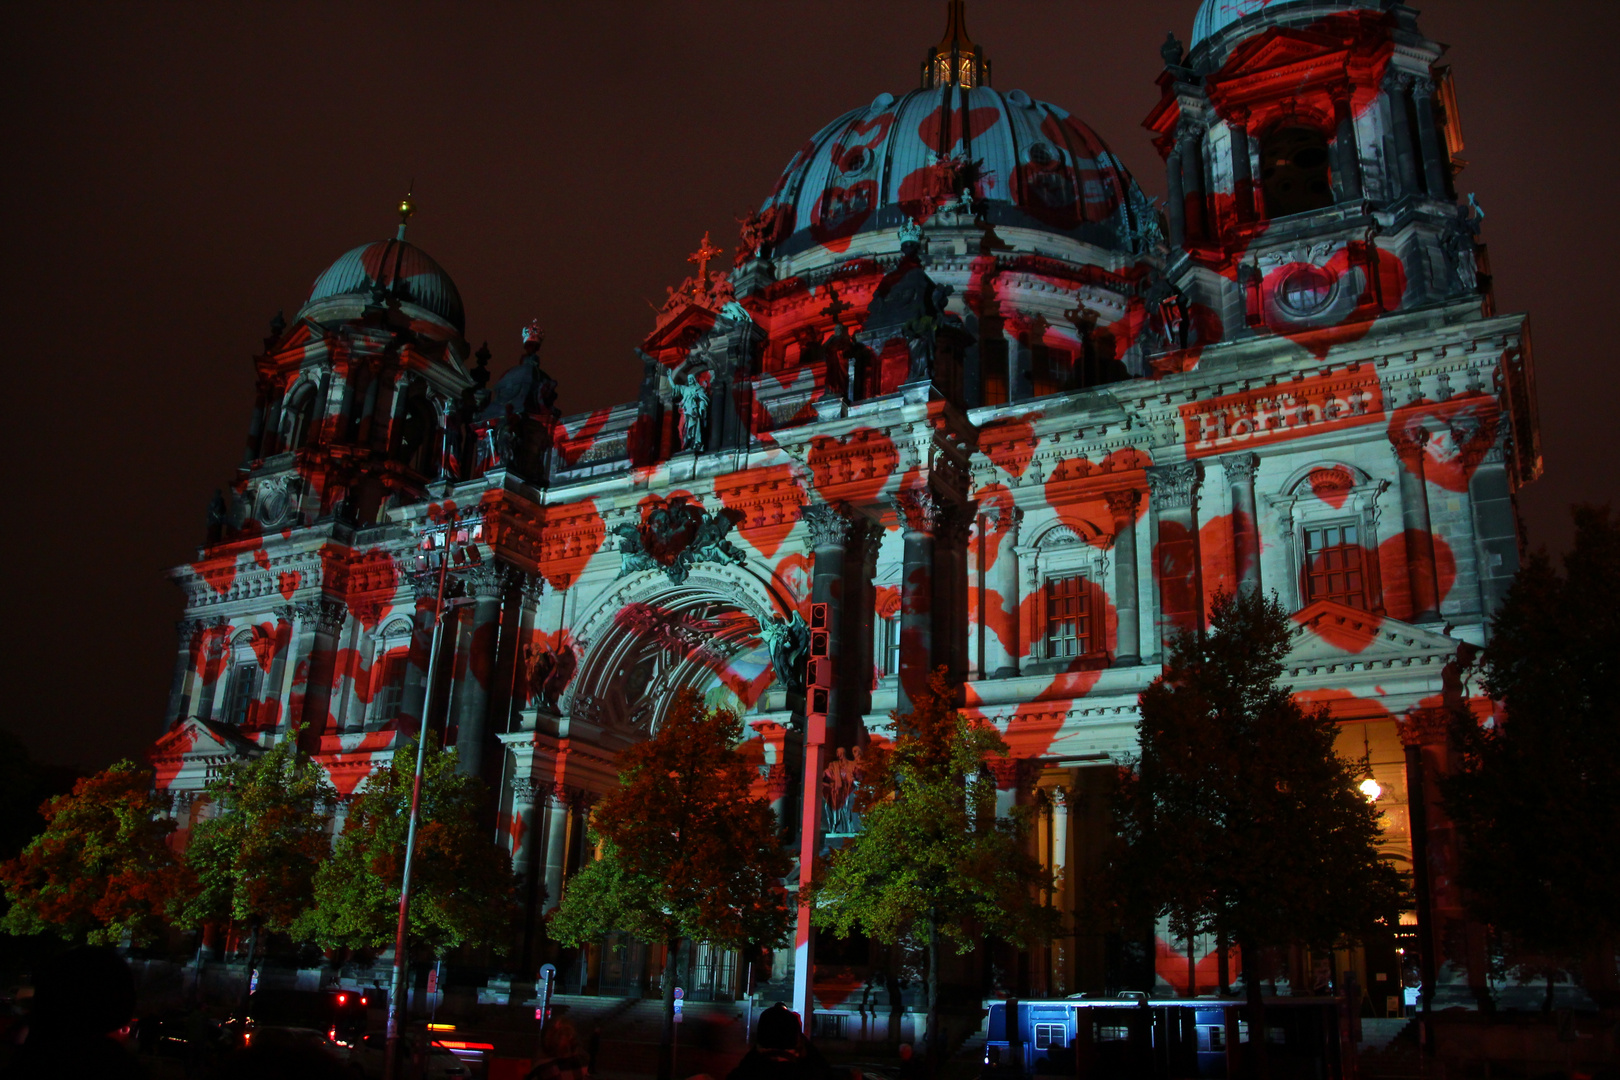 Festival of Lights Berlin